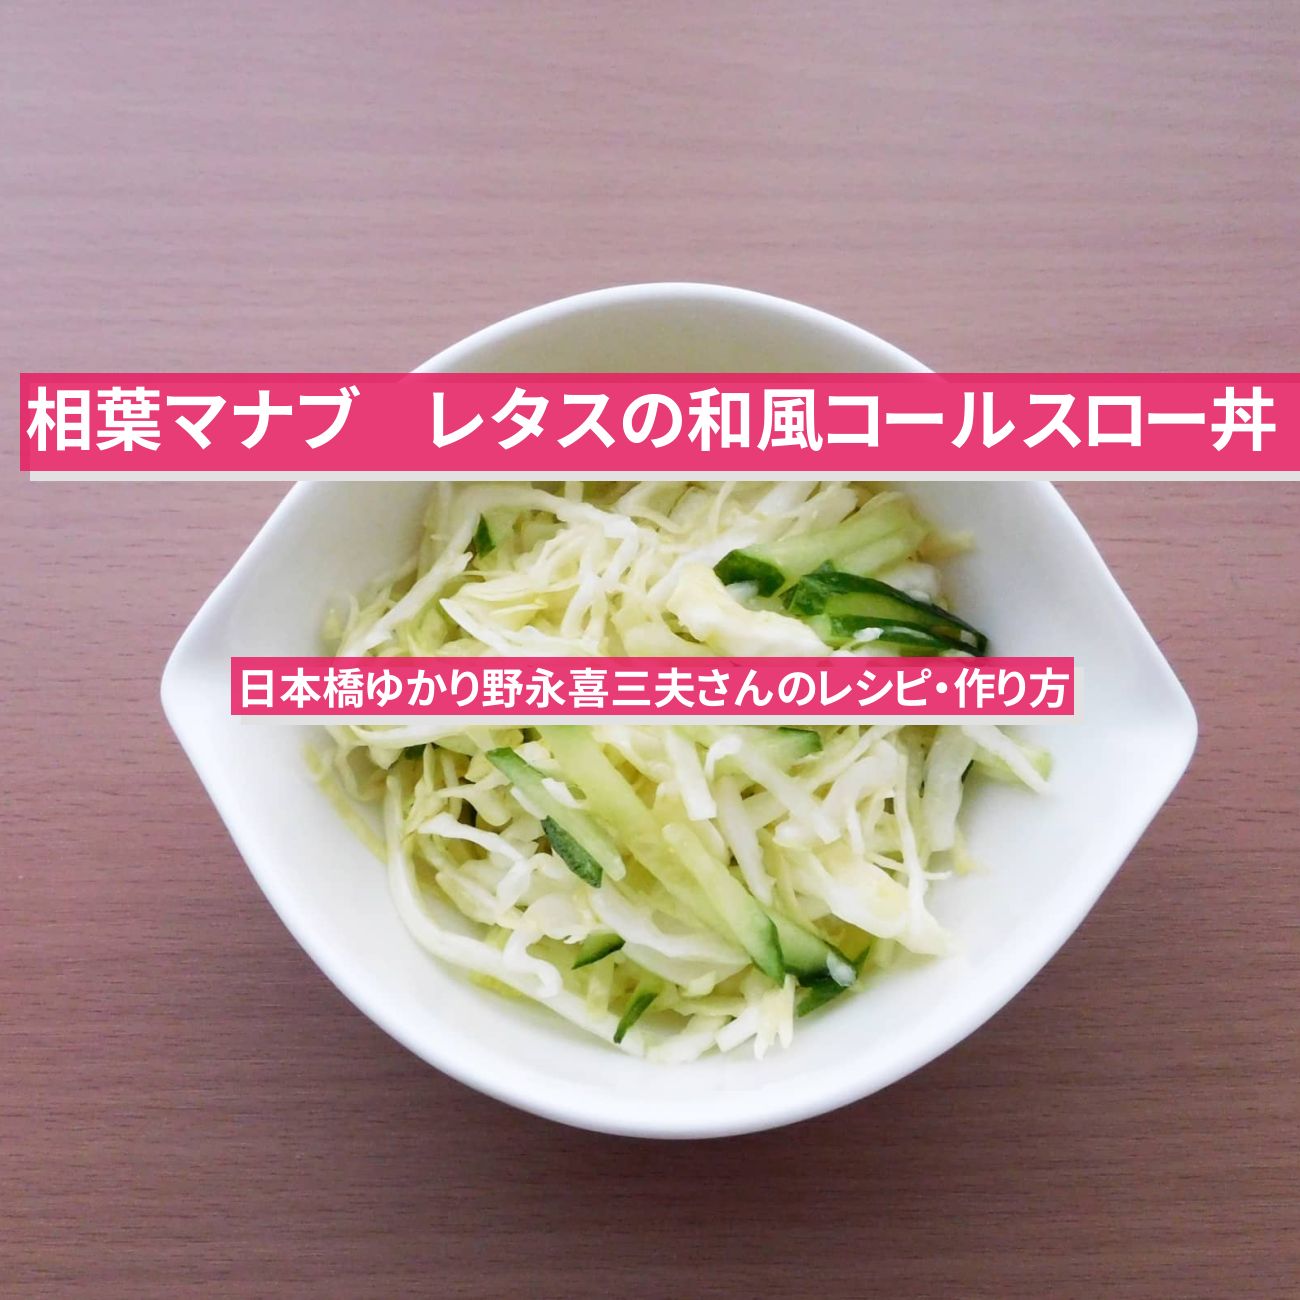 【相葉マナブ】『レタスの和風コールスロー丼』日本橋ゆかり野永喜三夫さんのレシピ・作り方